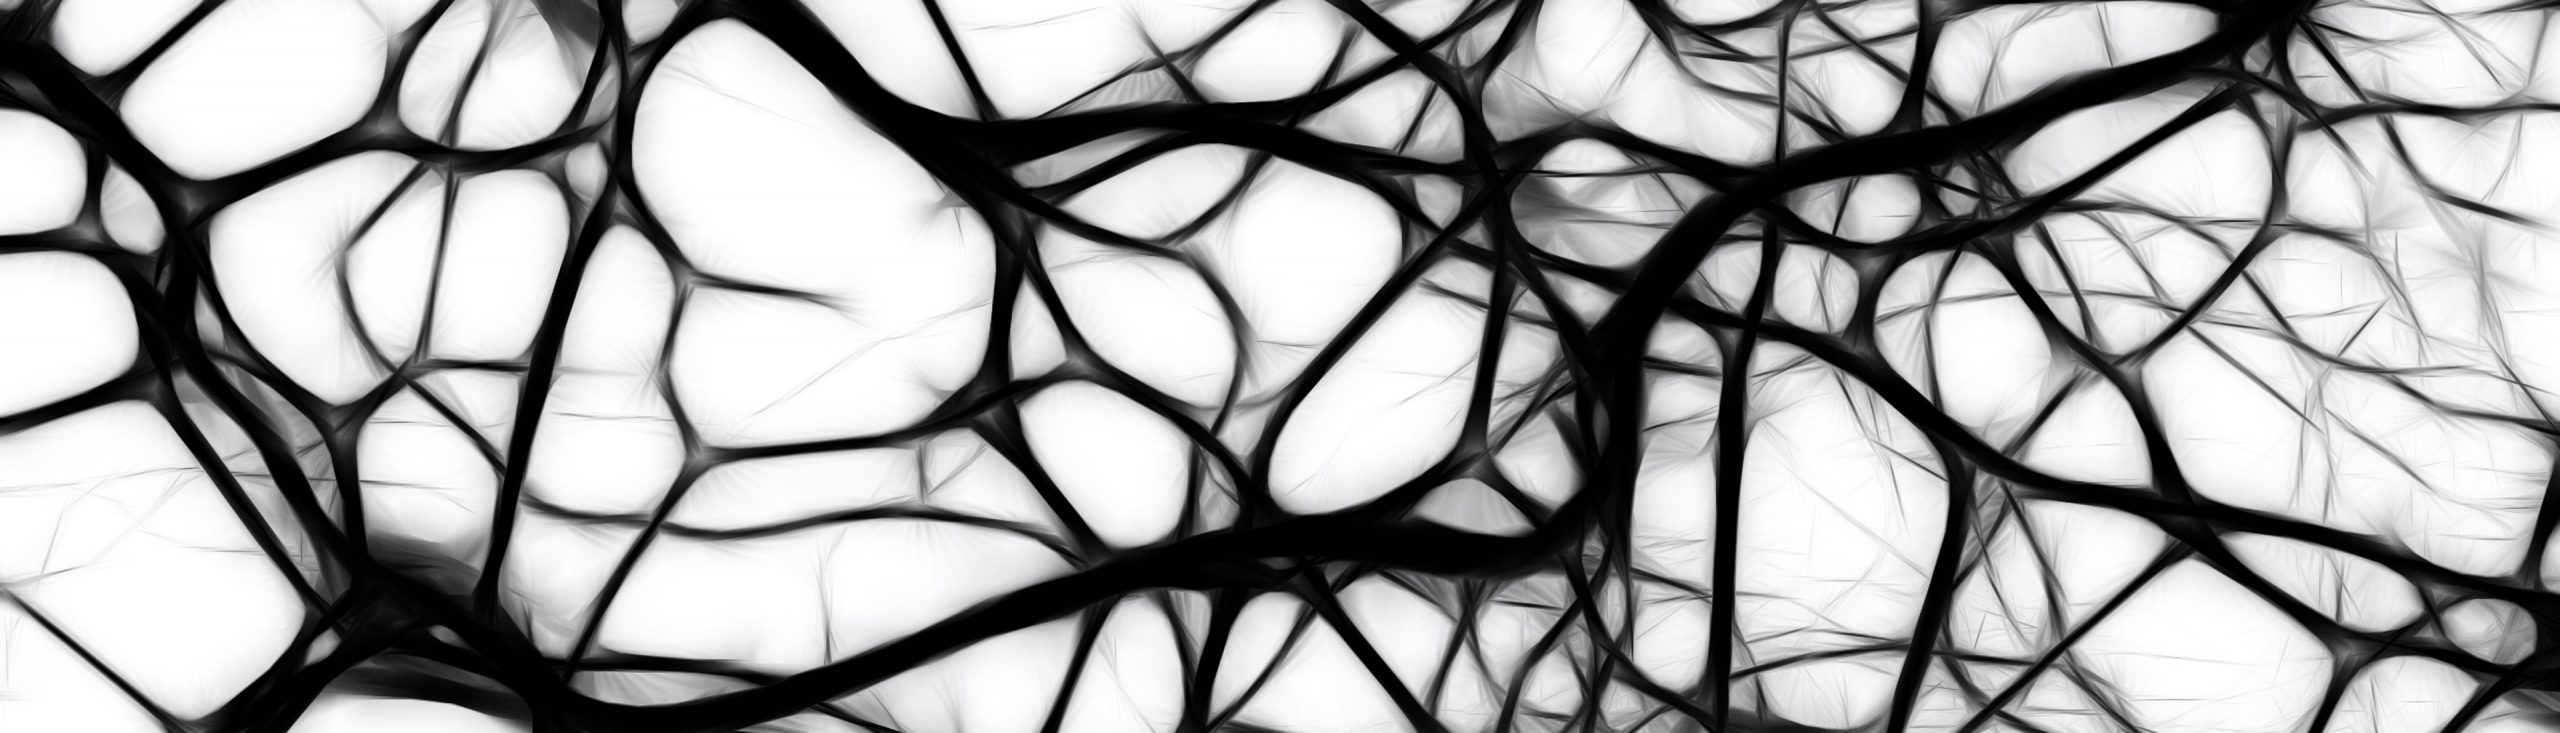 Neural networks, blog header image